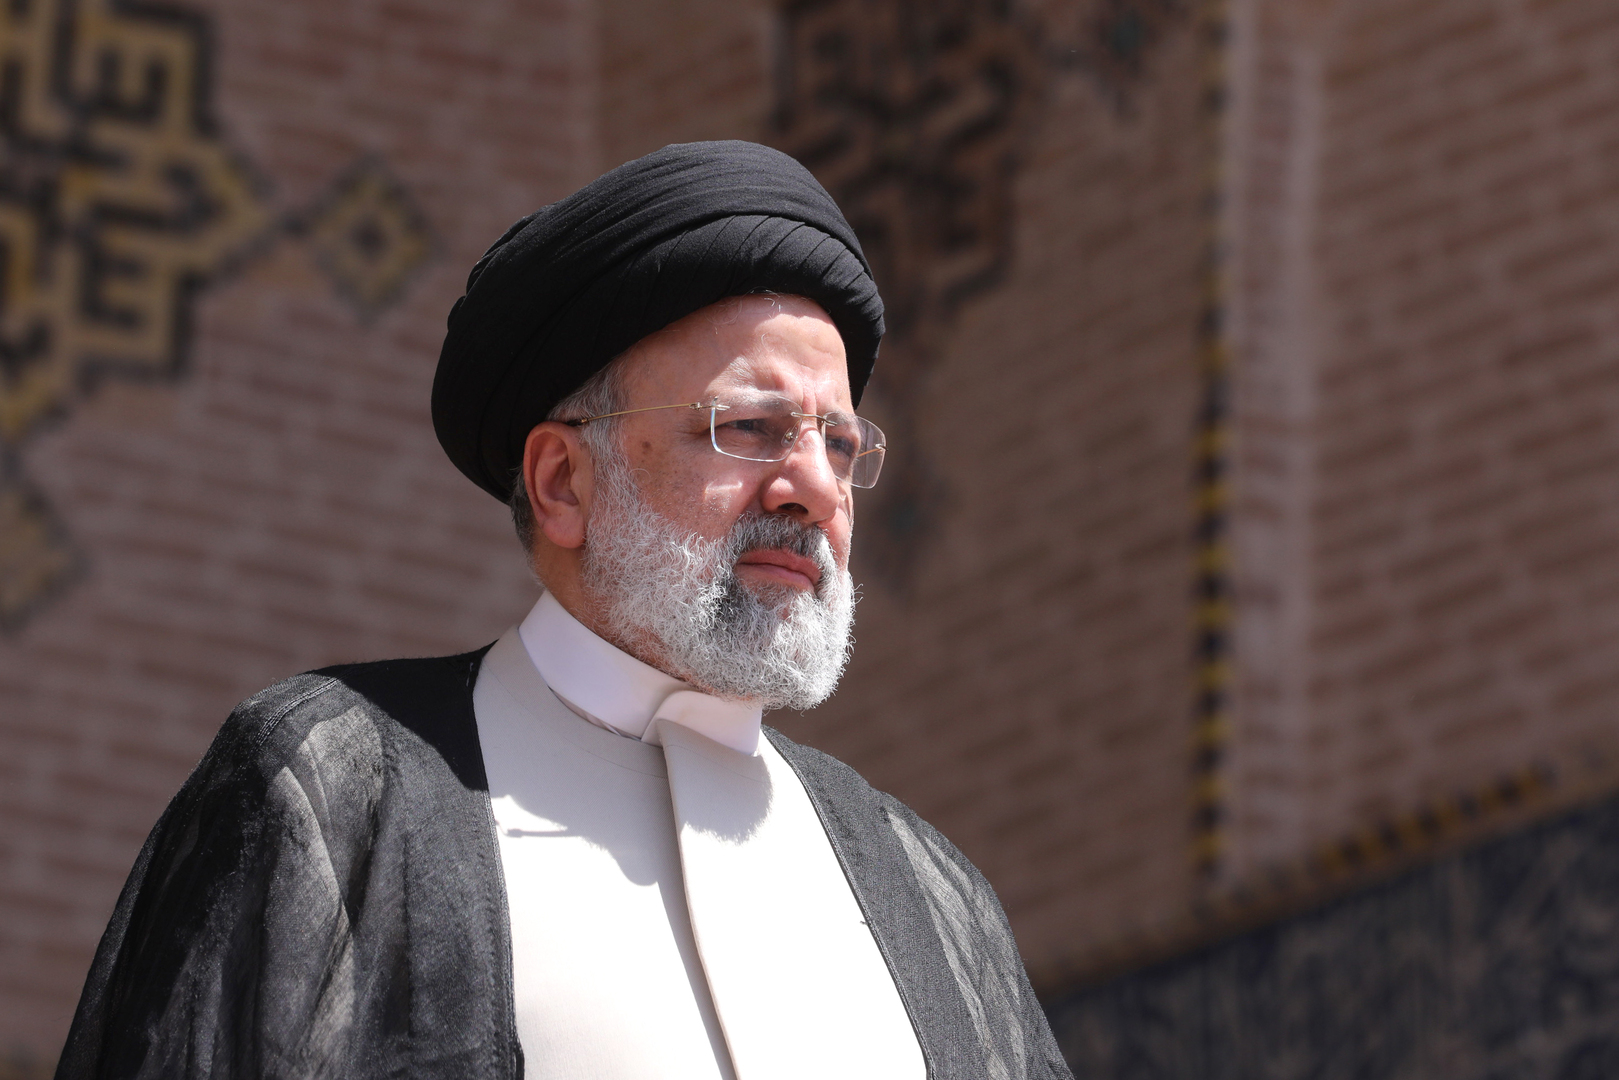 الرئيس الإيراني ابراهيم رئيسي